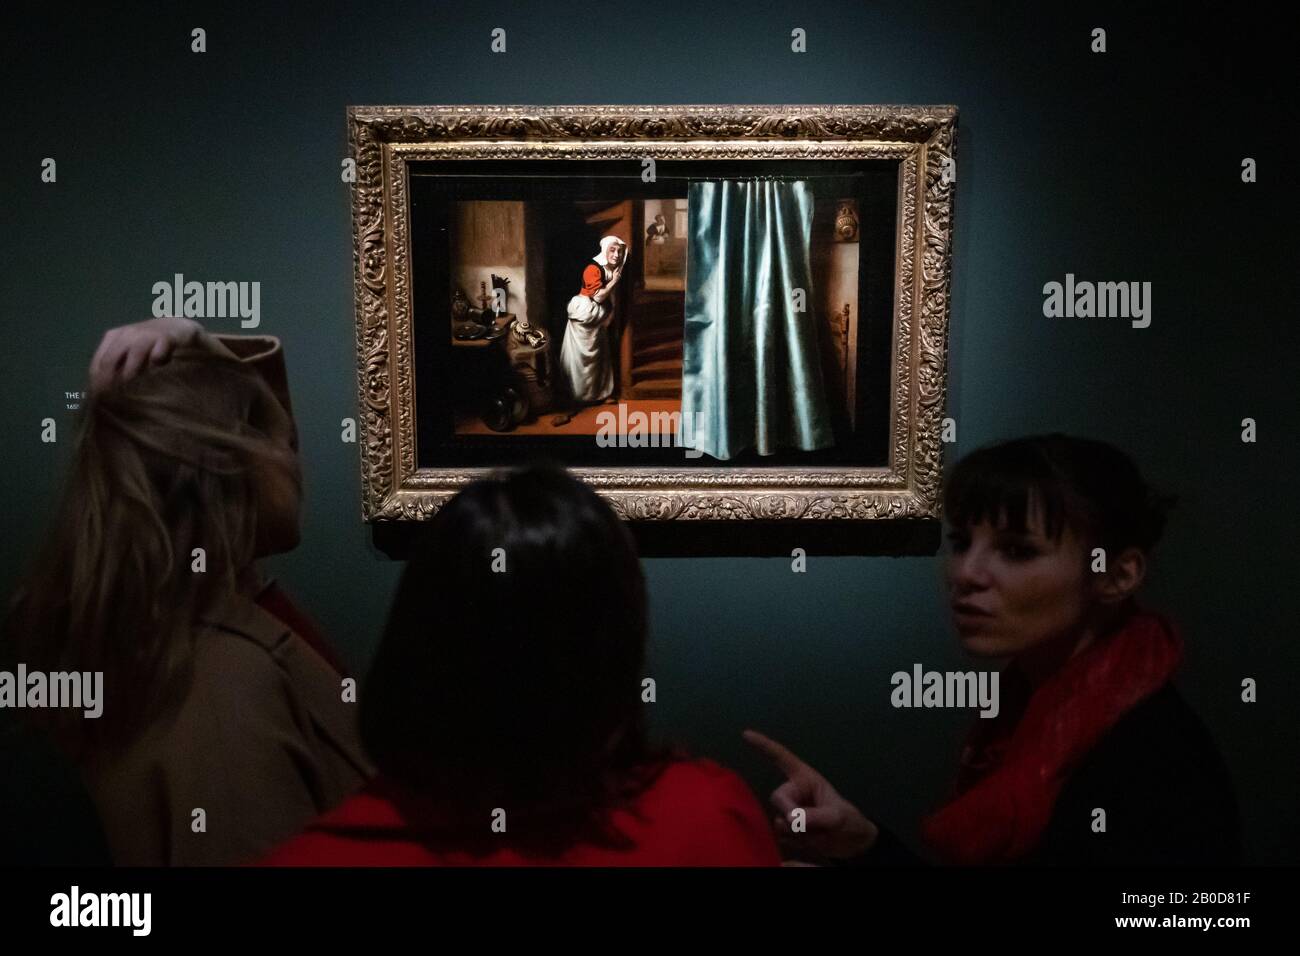 L'Eavesdropper di Nicolaes Maes è visto dai visitatori della galleria in una rassegna stampa per la nuova mostra Nicolaes Maes: Dutch Master of the Golden Age, alla National Gallery di Londra. Foto Stock